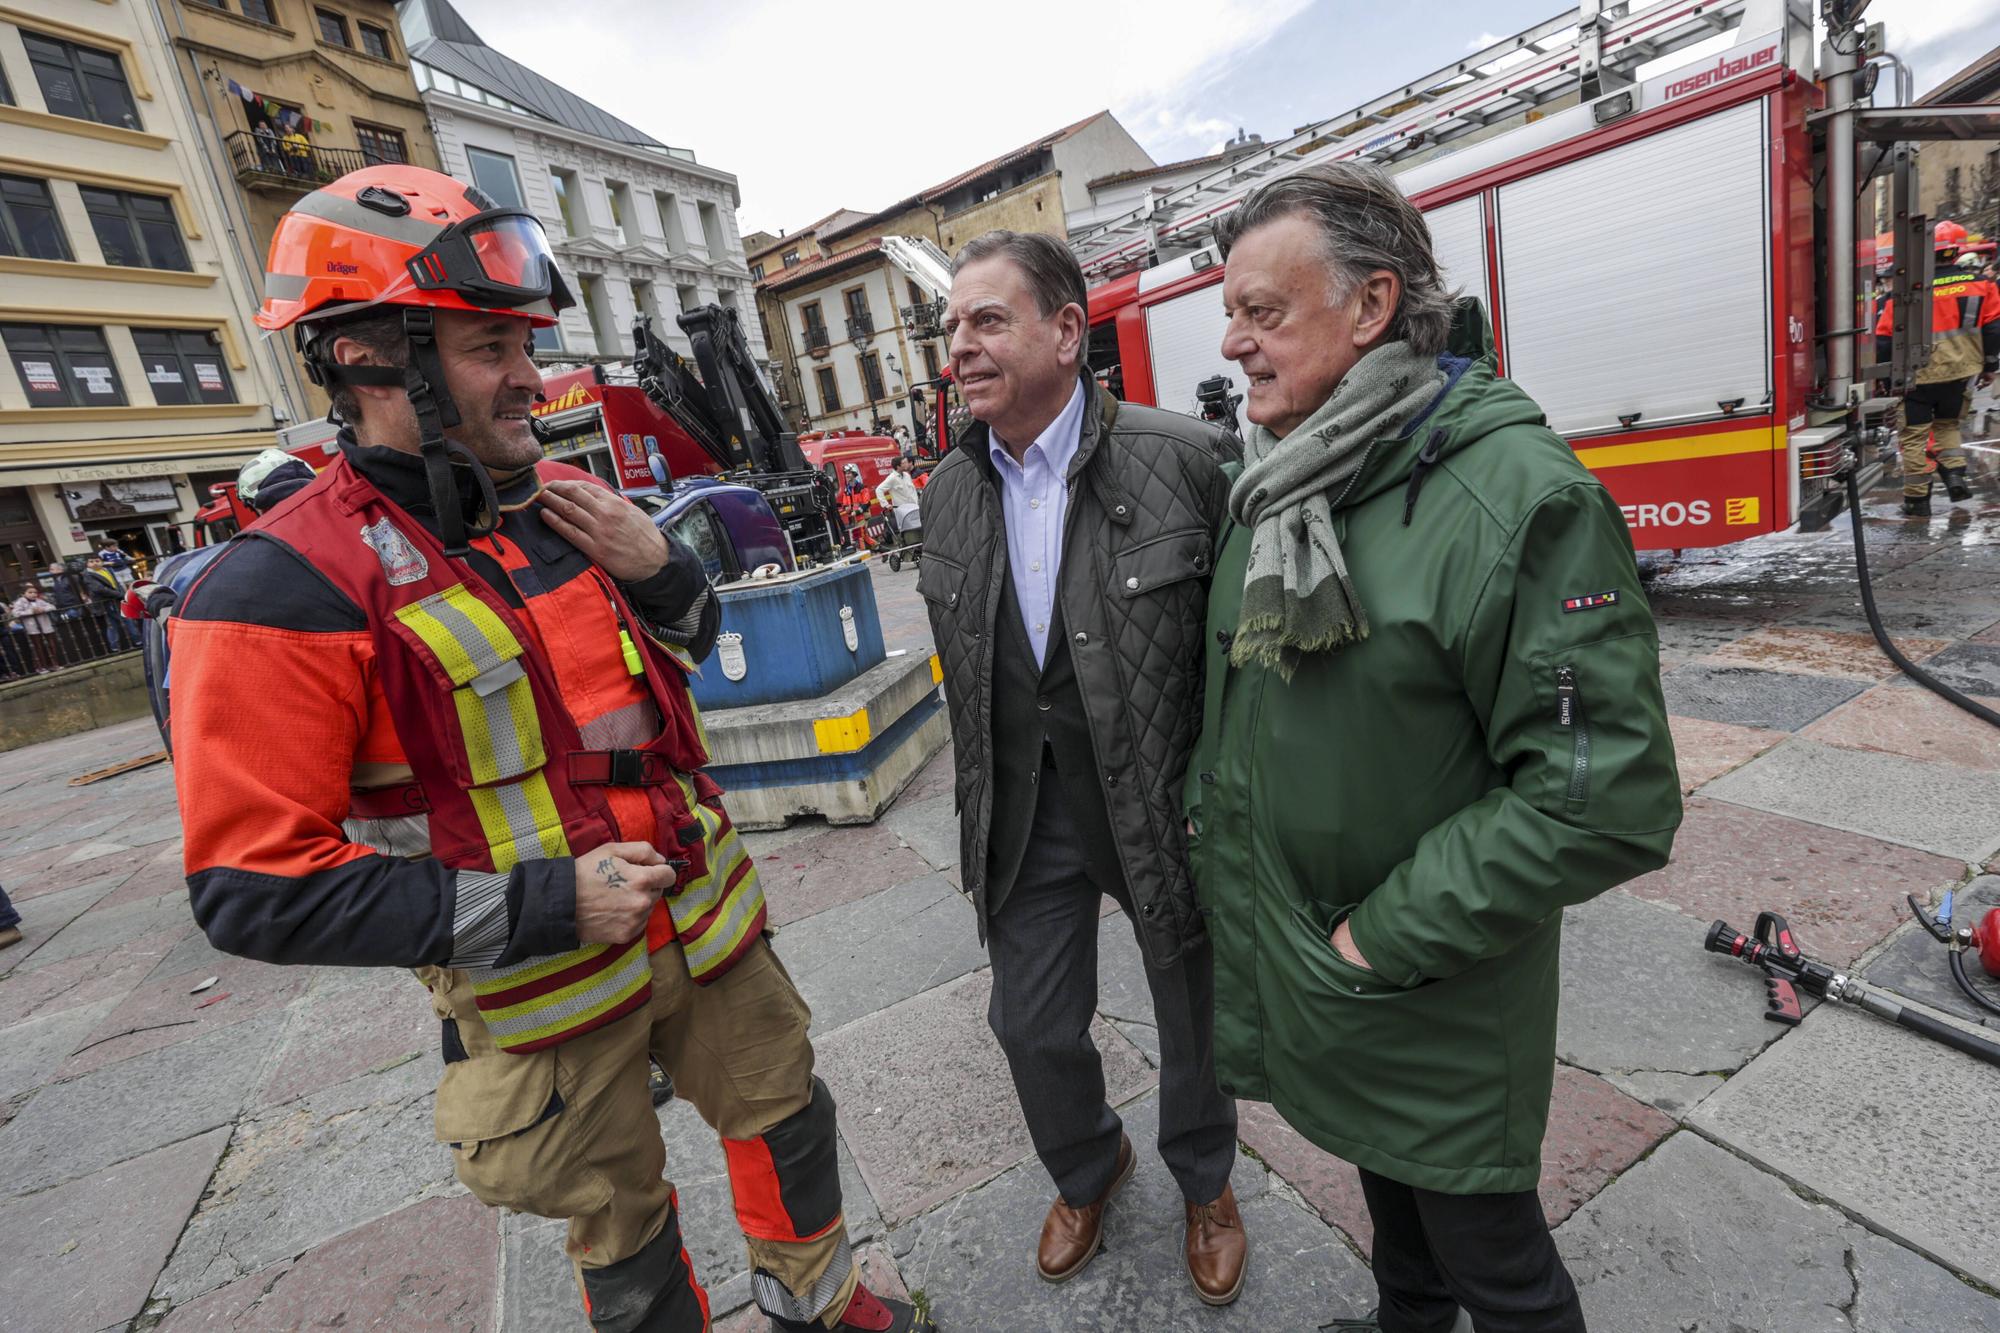 Así fue la exhibición de los bomberos en la plaza de la Catedral de Oviedo